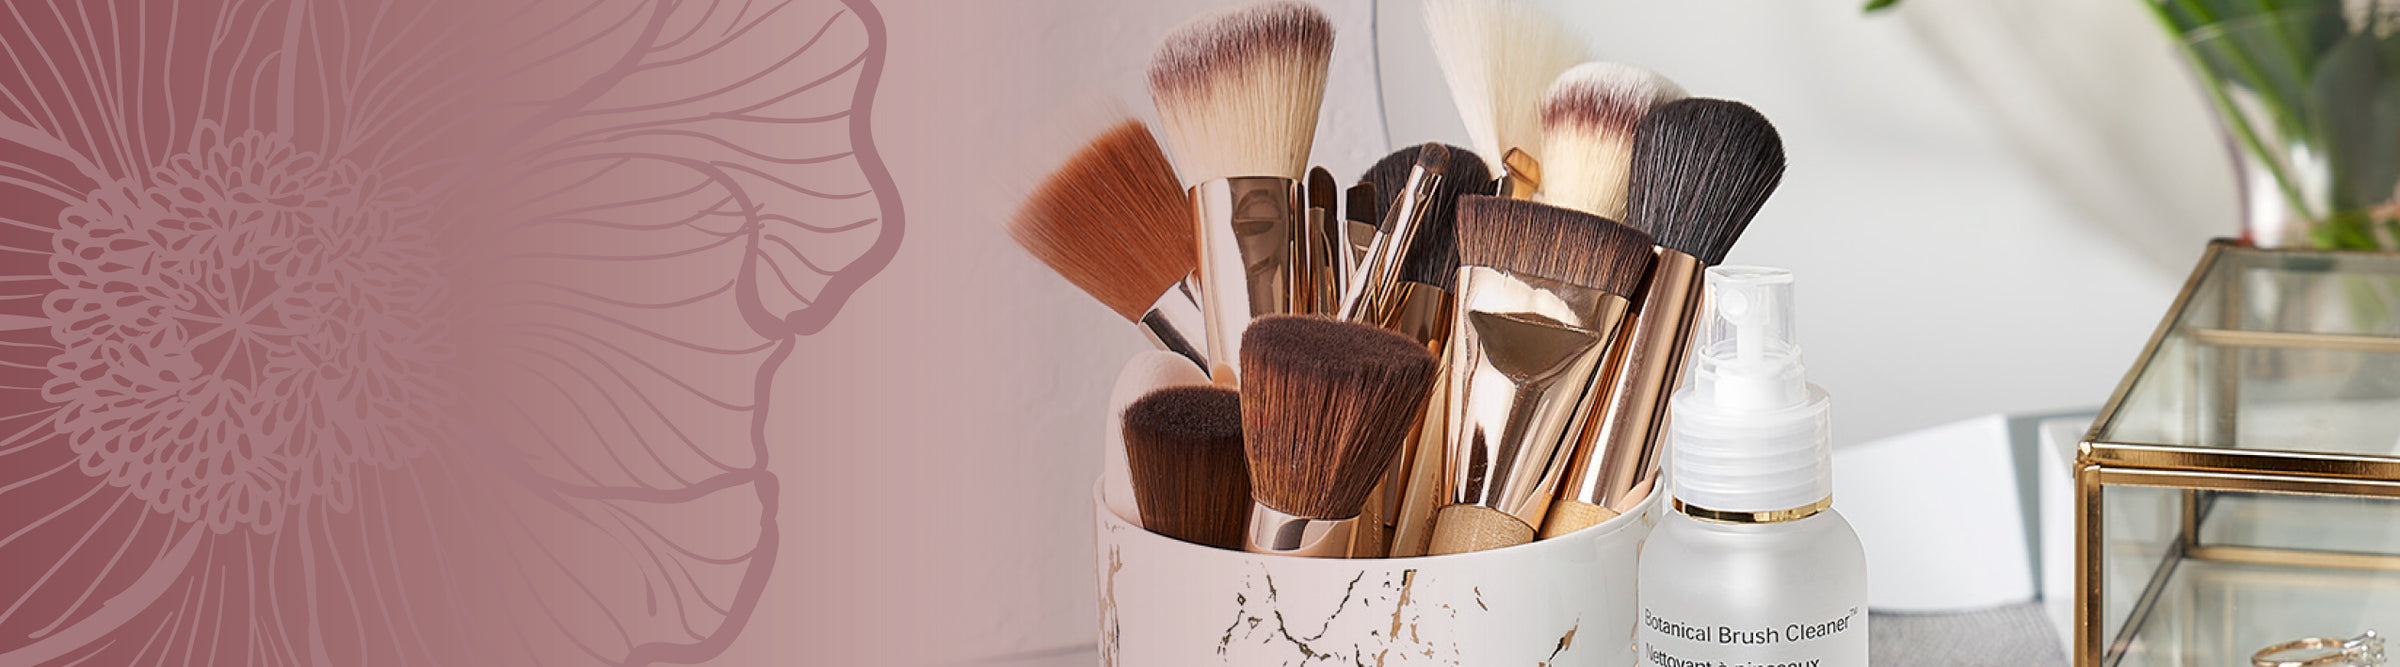 Cosmetics - Tools - Brushes | Applicators